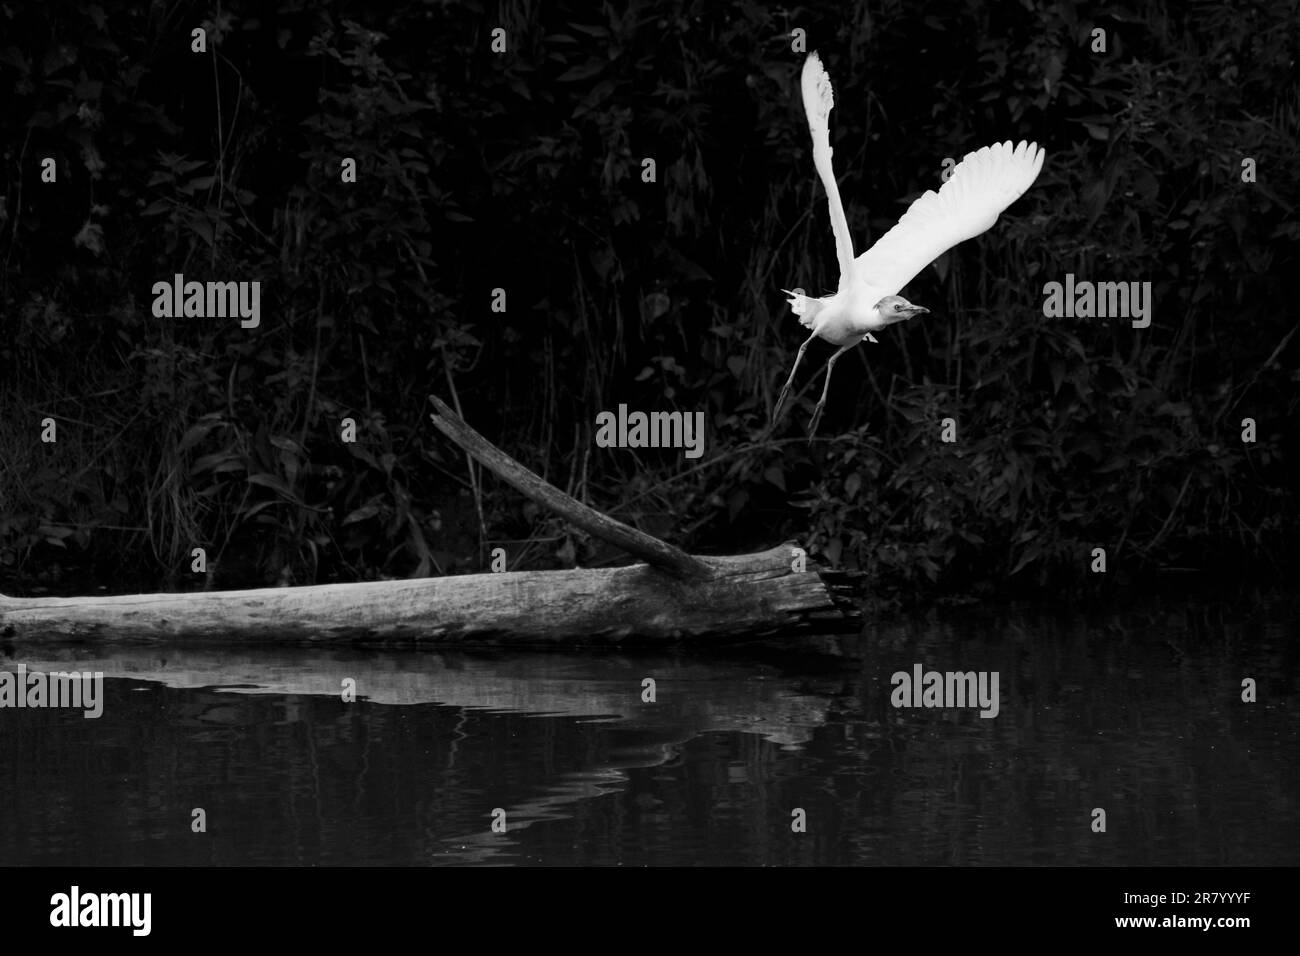 White heron takes flight Stock Photo